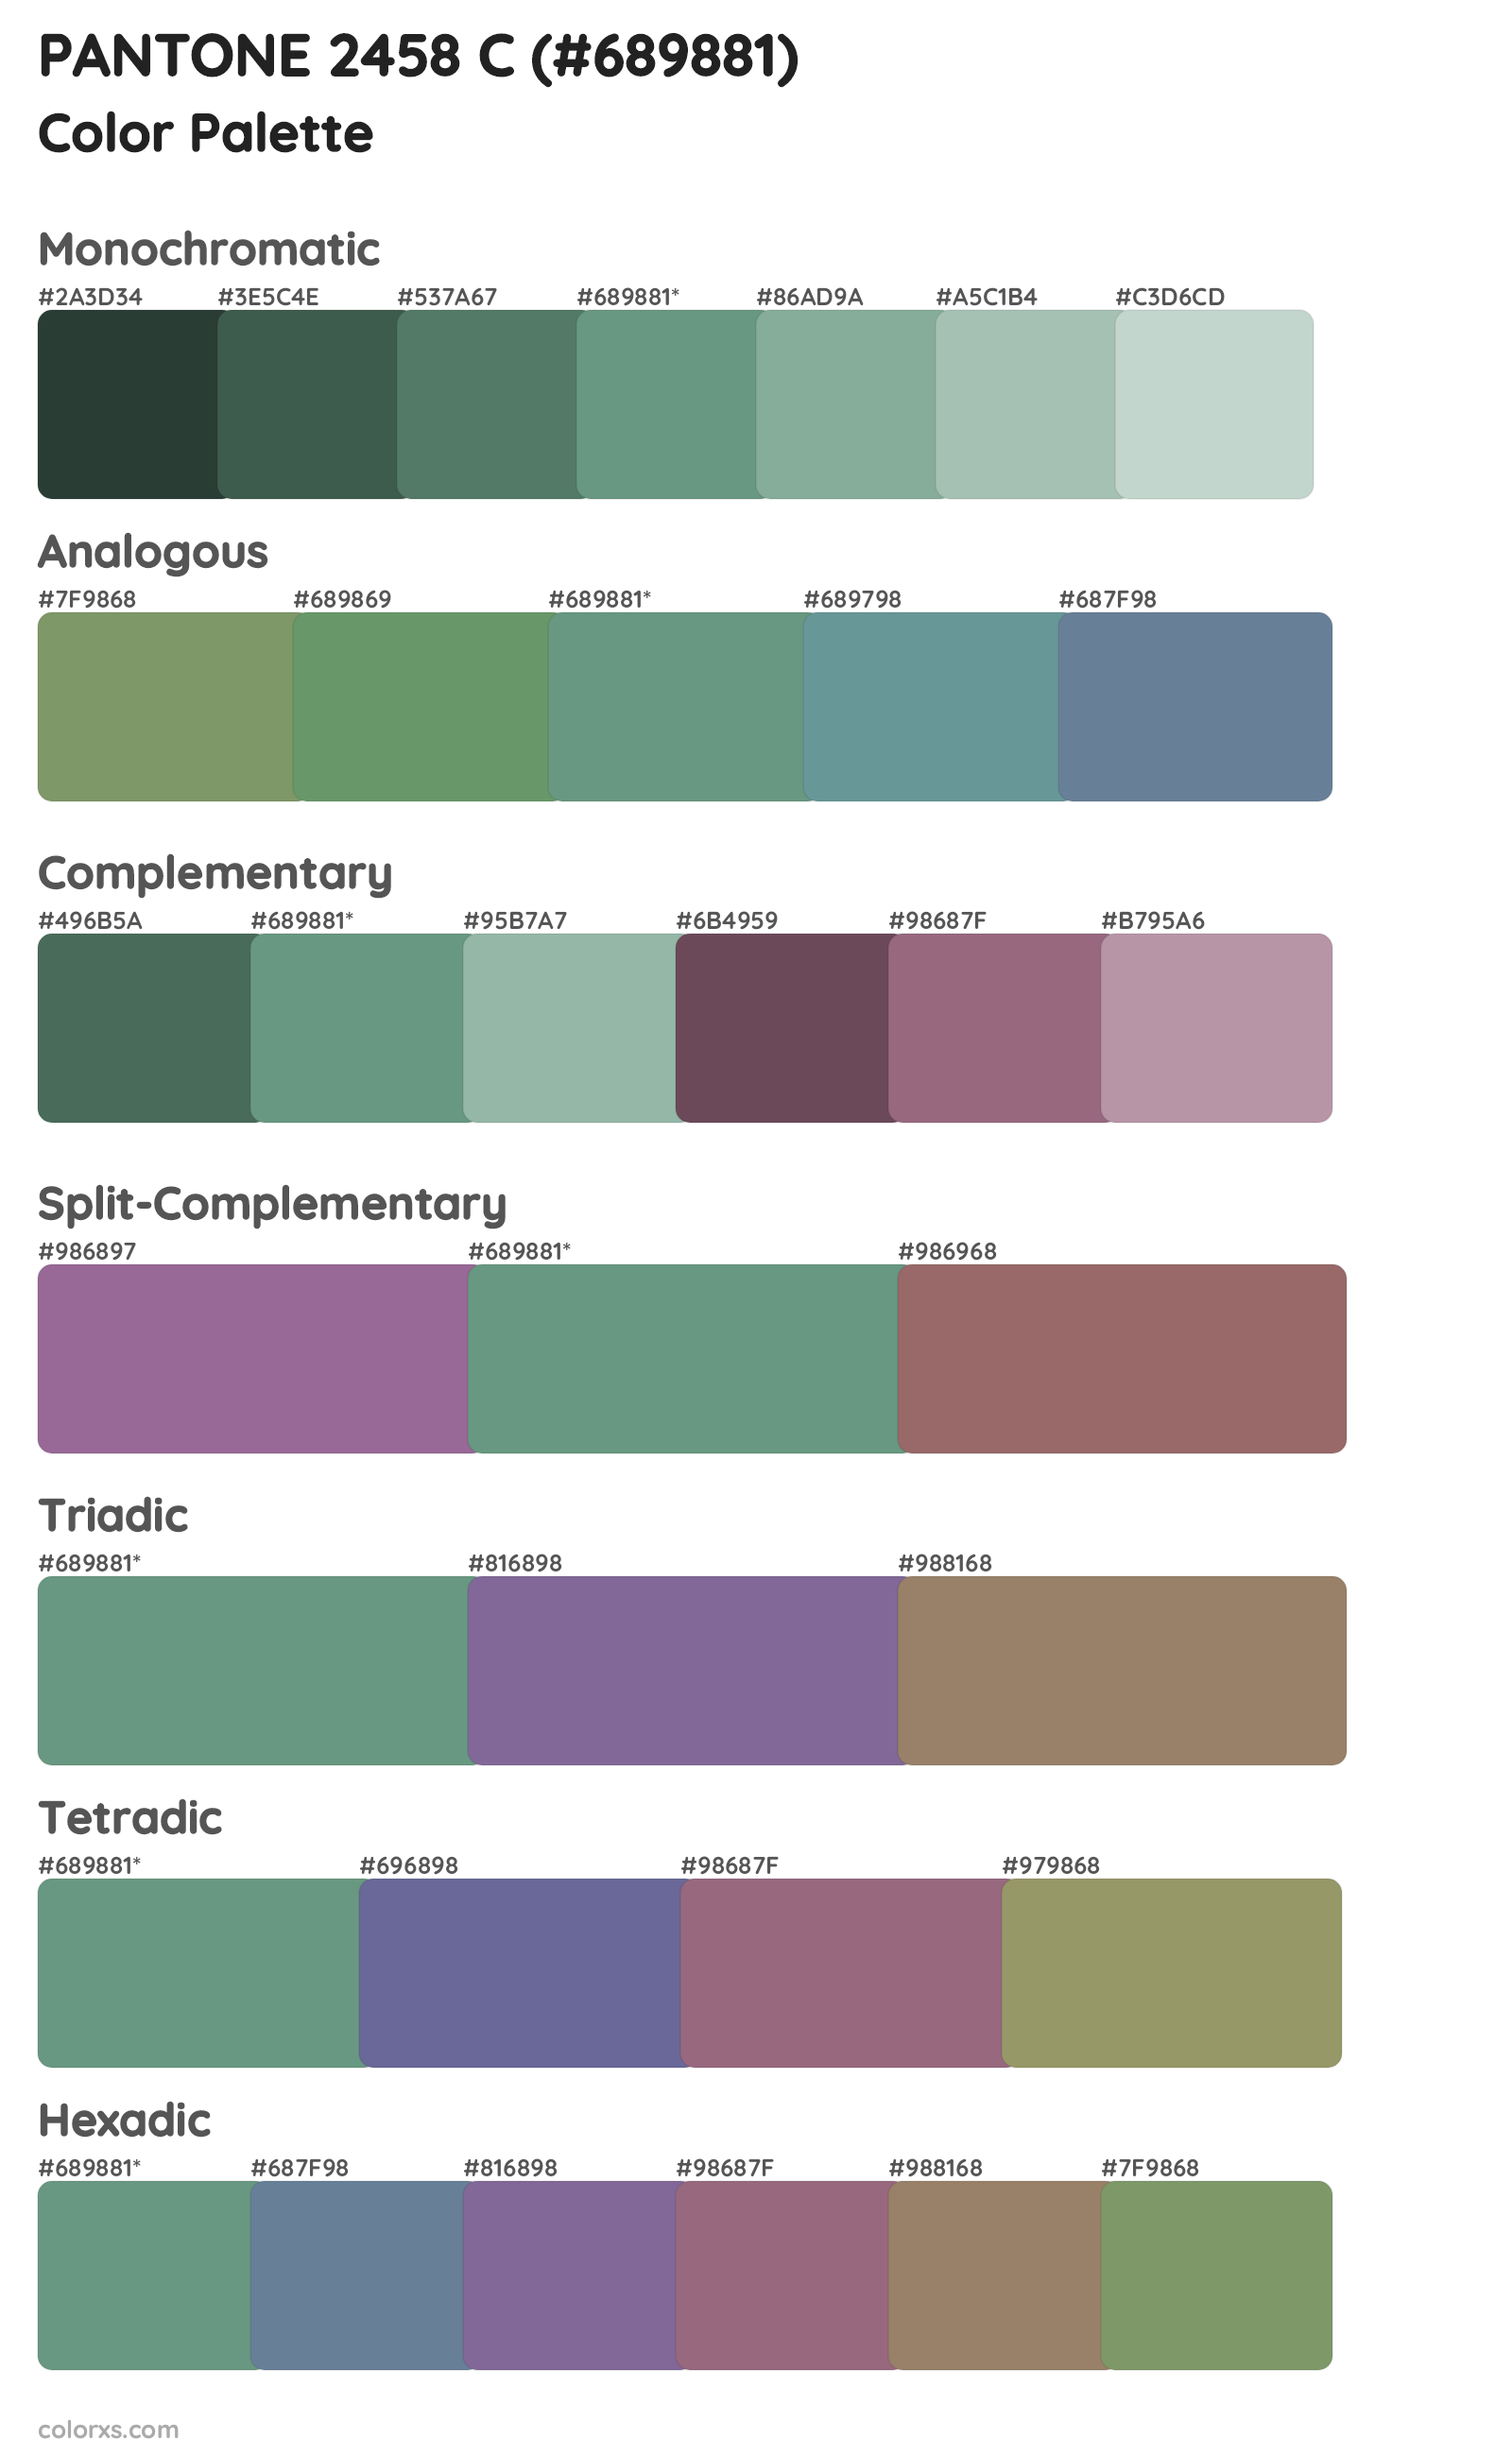 PANTONE 2458 C Color Scheme Palettes